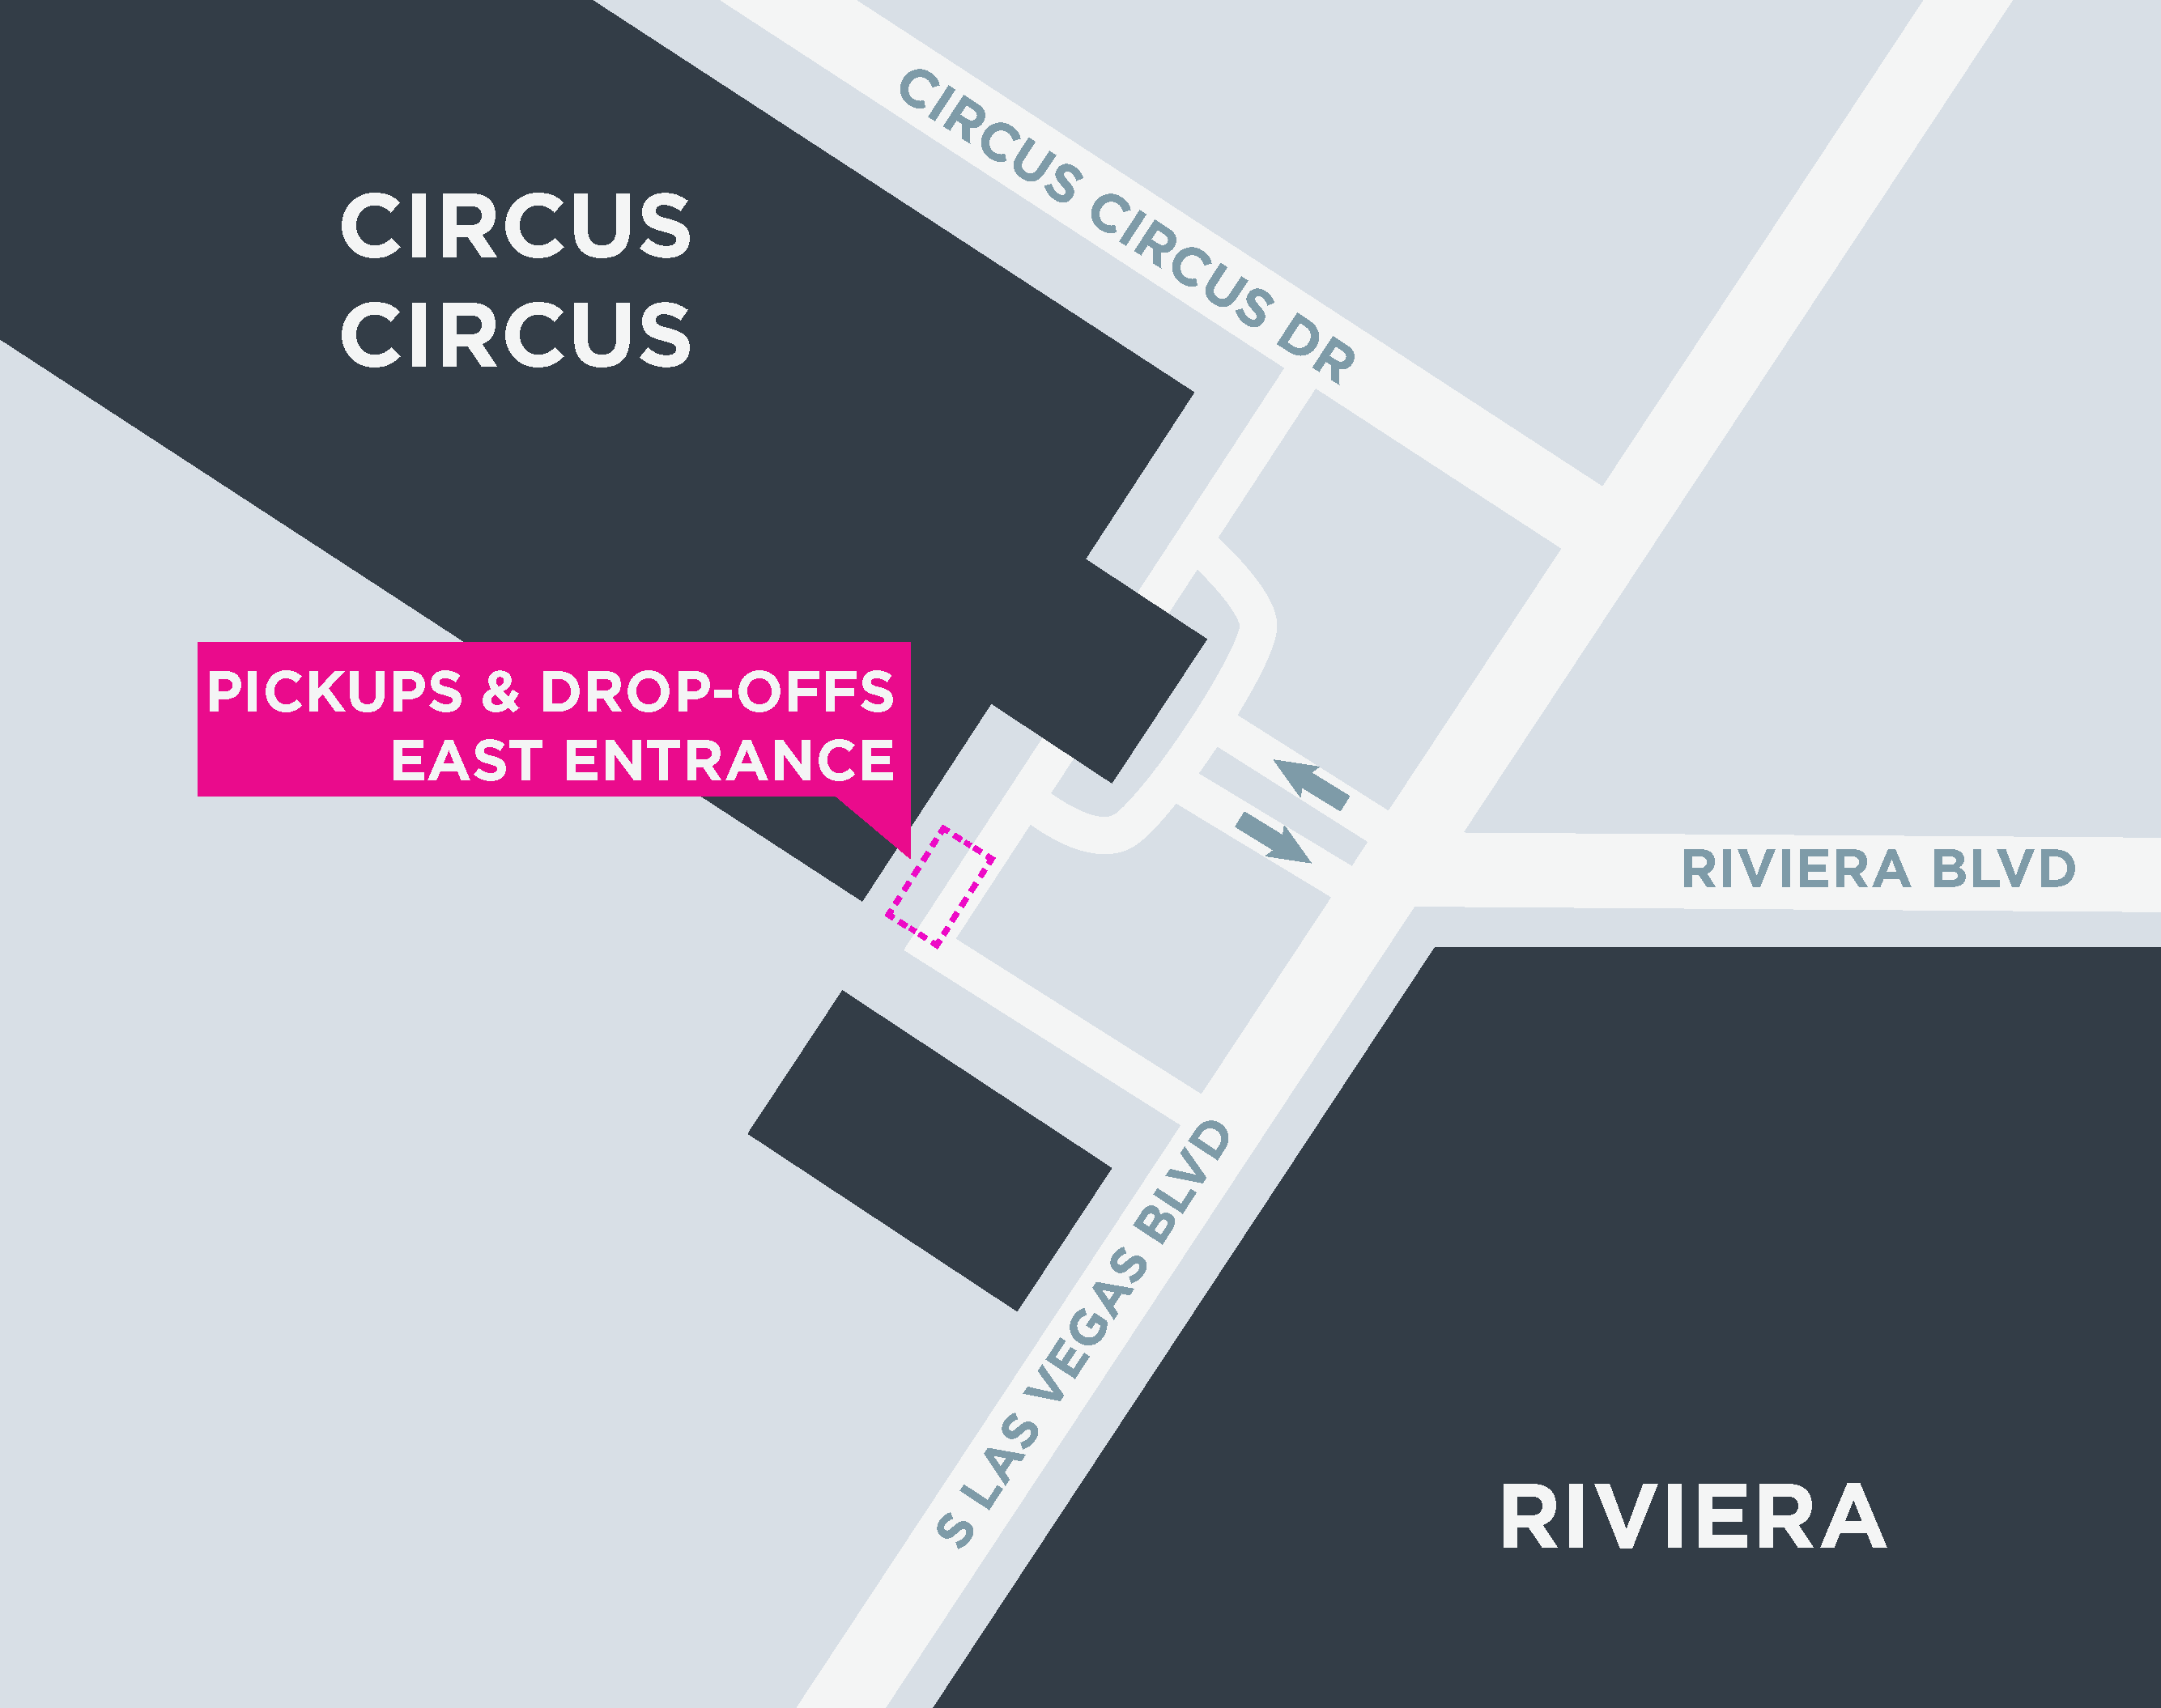 Cette image montre une carte du Circus Circus, y compris les zones de départ et d'arrivée.